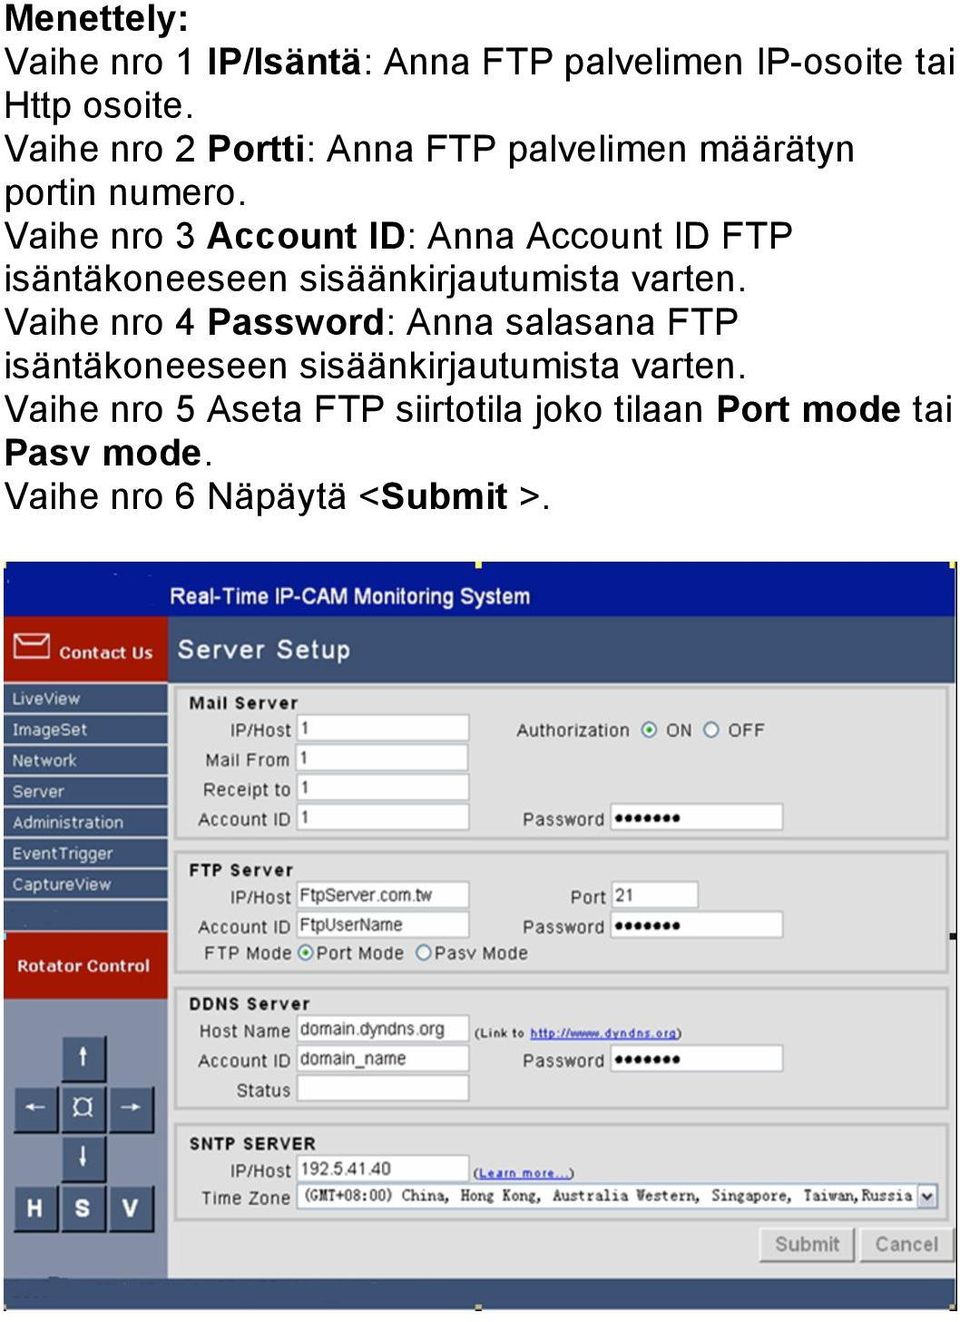 Vaihe nro 3 Account ID: Anna Account ID FTP isäntäkoneeseen sisäänkirjautumista varten.